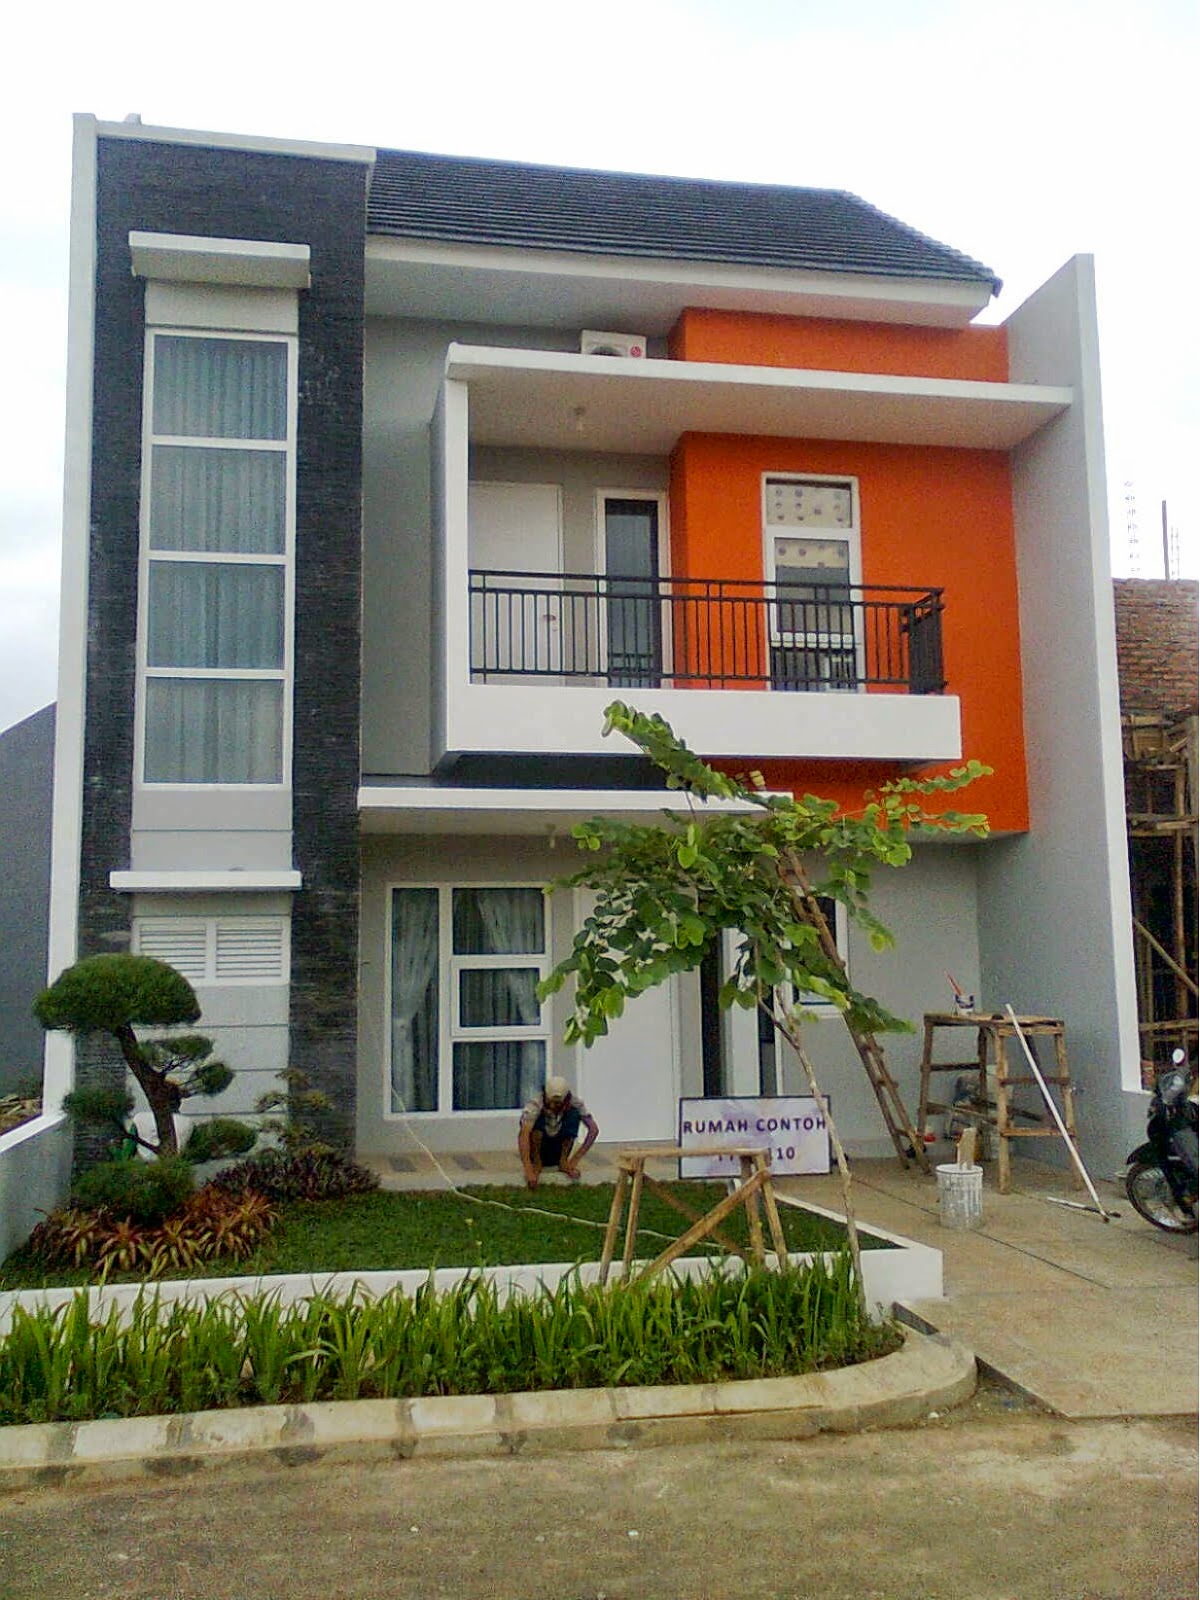 61 Desain Rumah Minimalis Warna Orange Desain Rumah Minimalis Terbaru